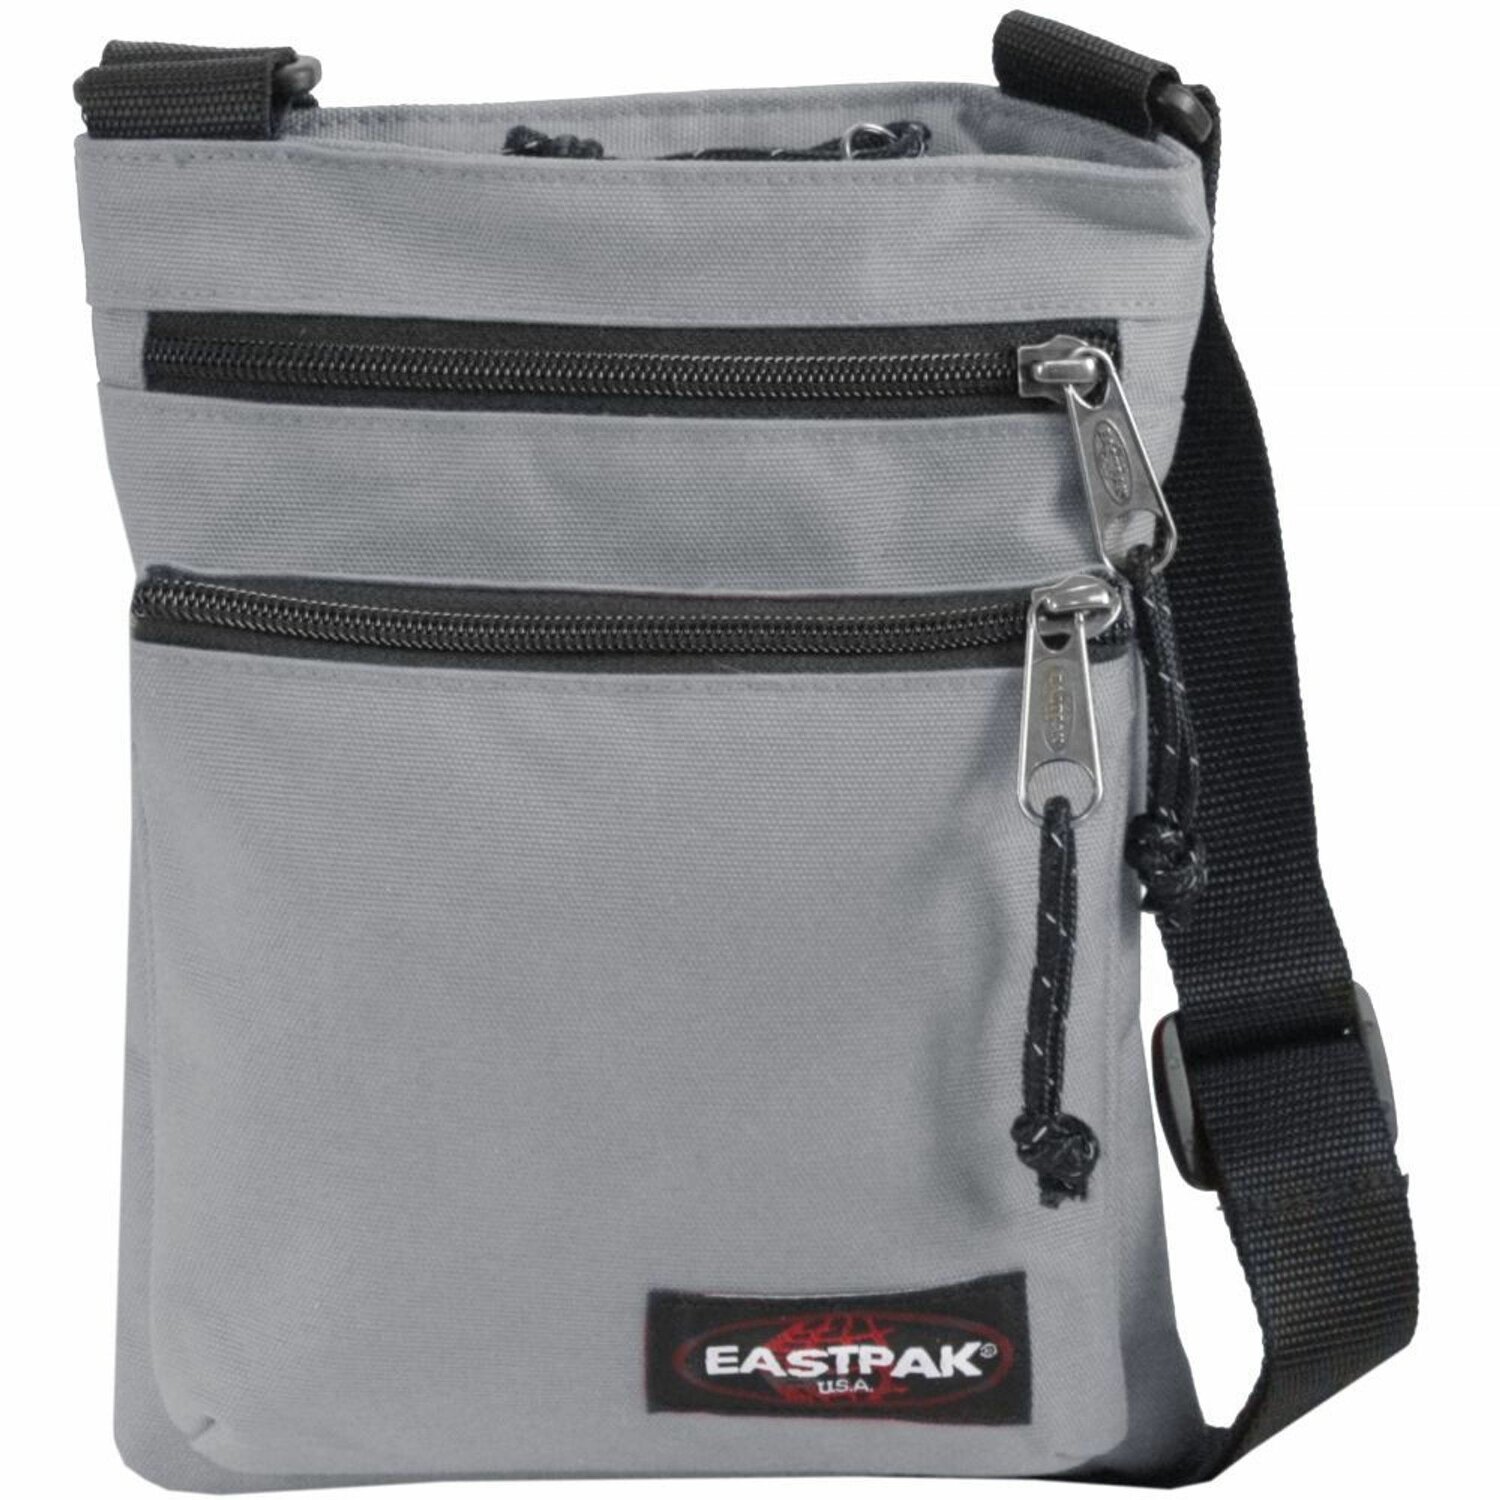 SUPER sconto su questa utilissima borsa a tracolla Eastpak! (-22%) -  SpazioGames